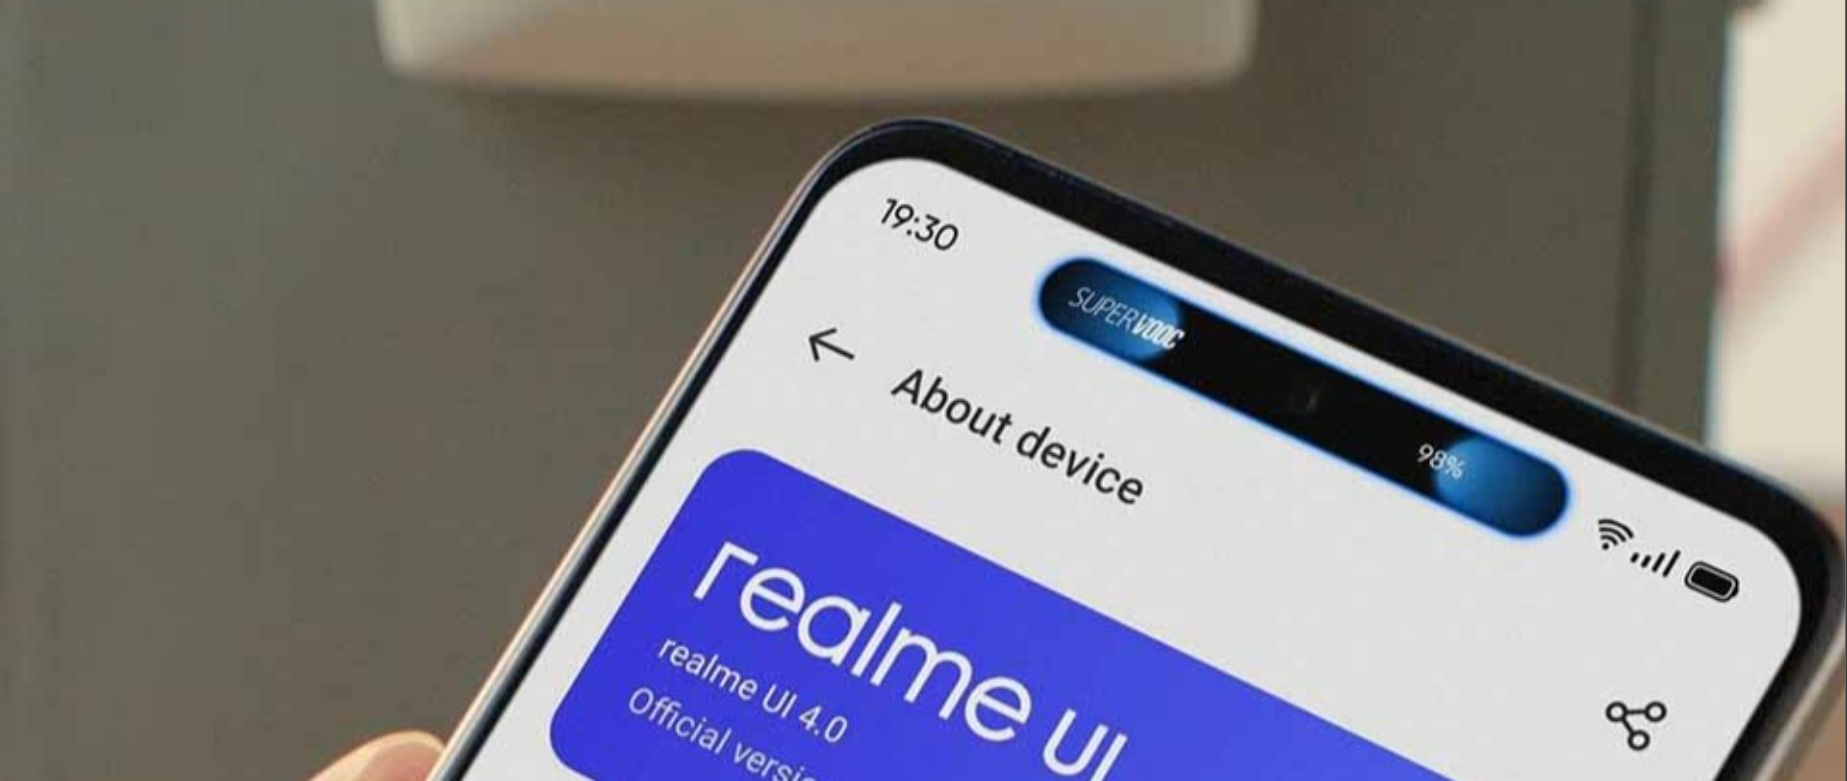 Thương hiệu Realme của Oppo sắp ra mắt dòng C55